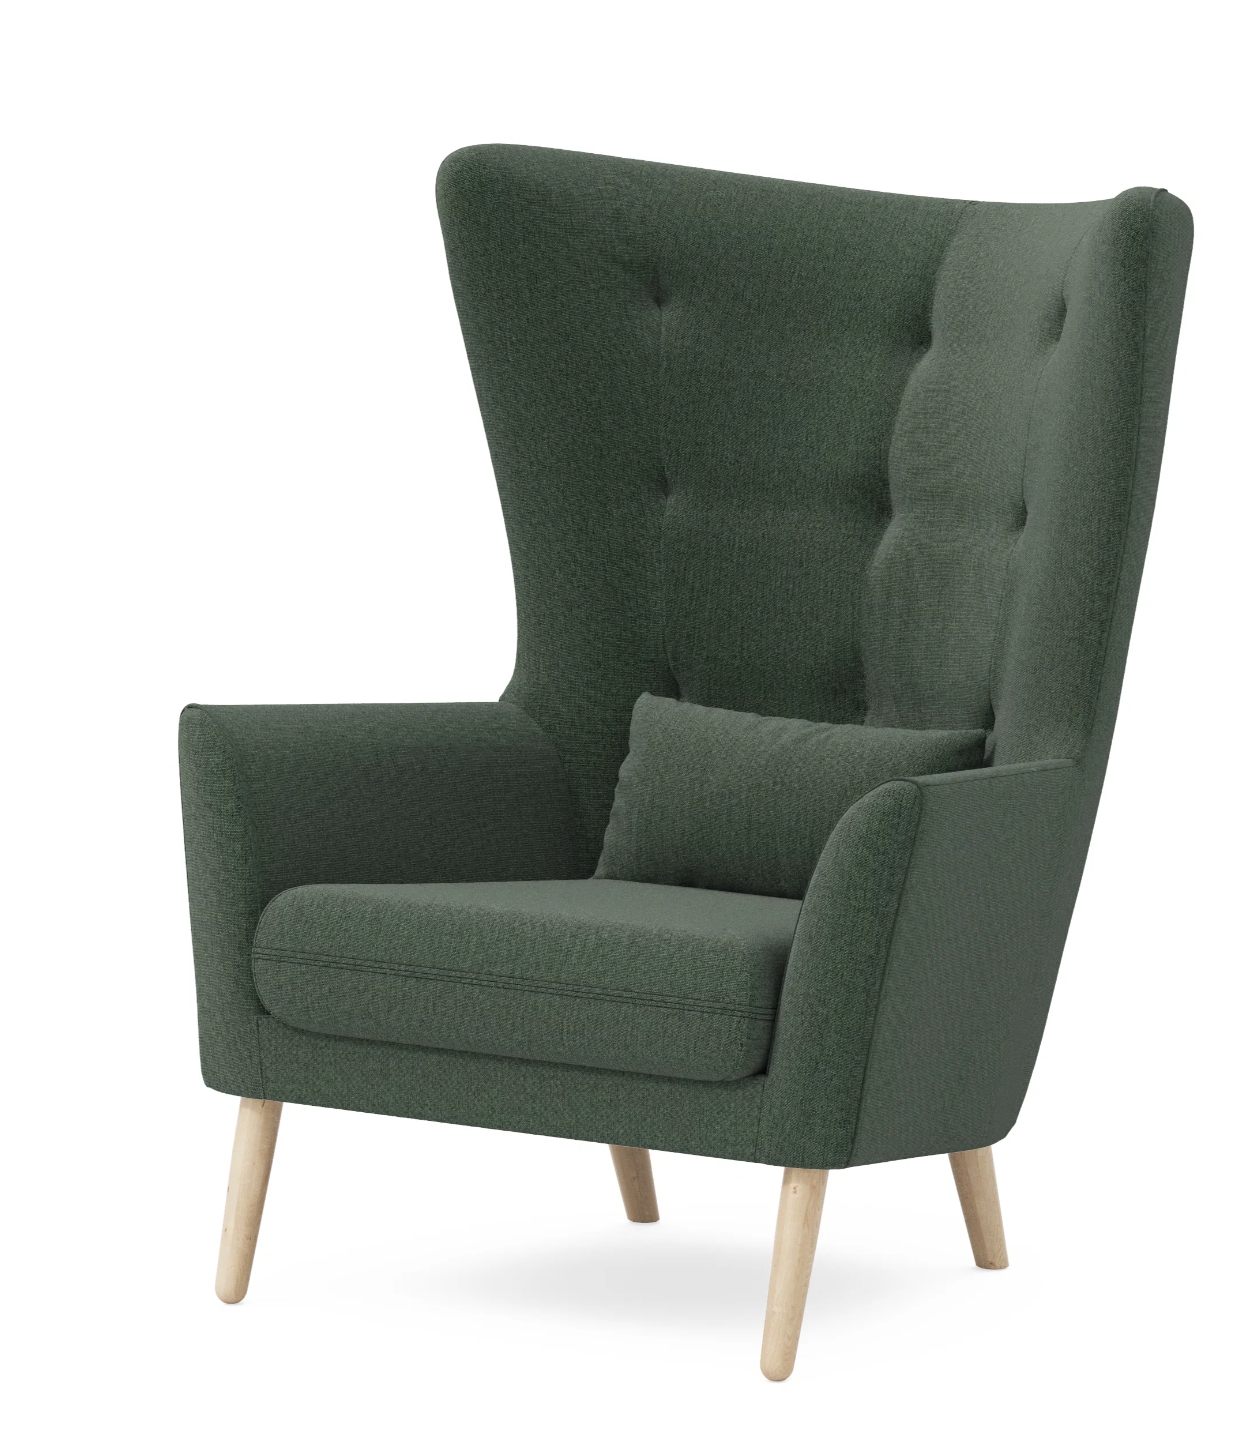 Кресло с декоративной подушкой Pragma Elton со скидкой по промокоду